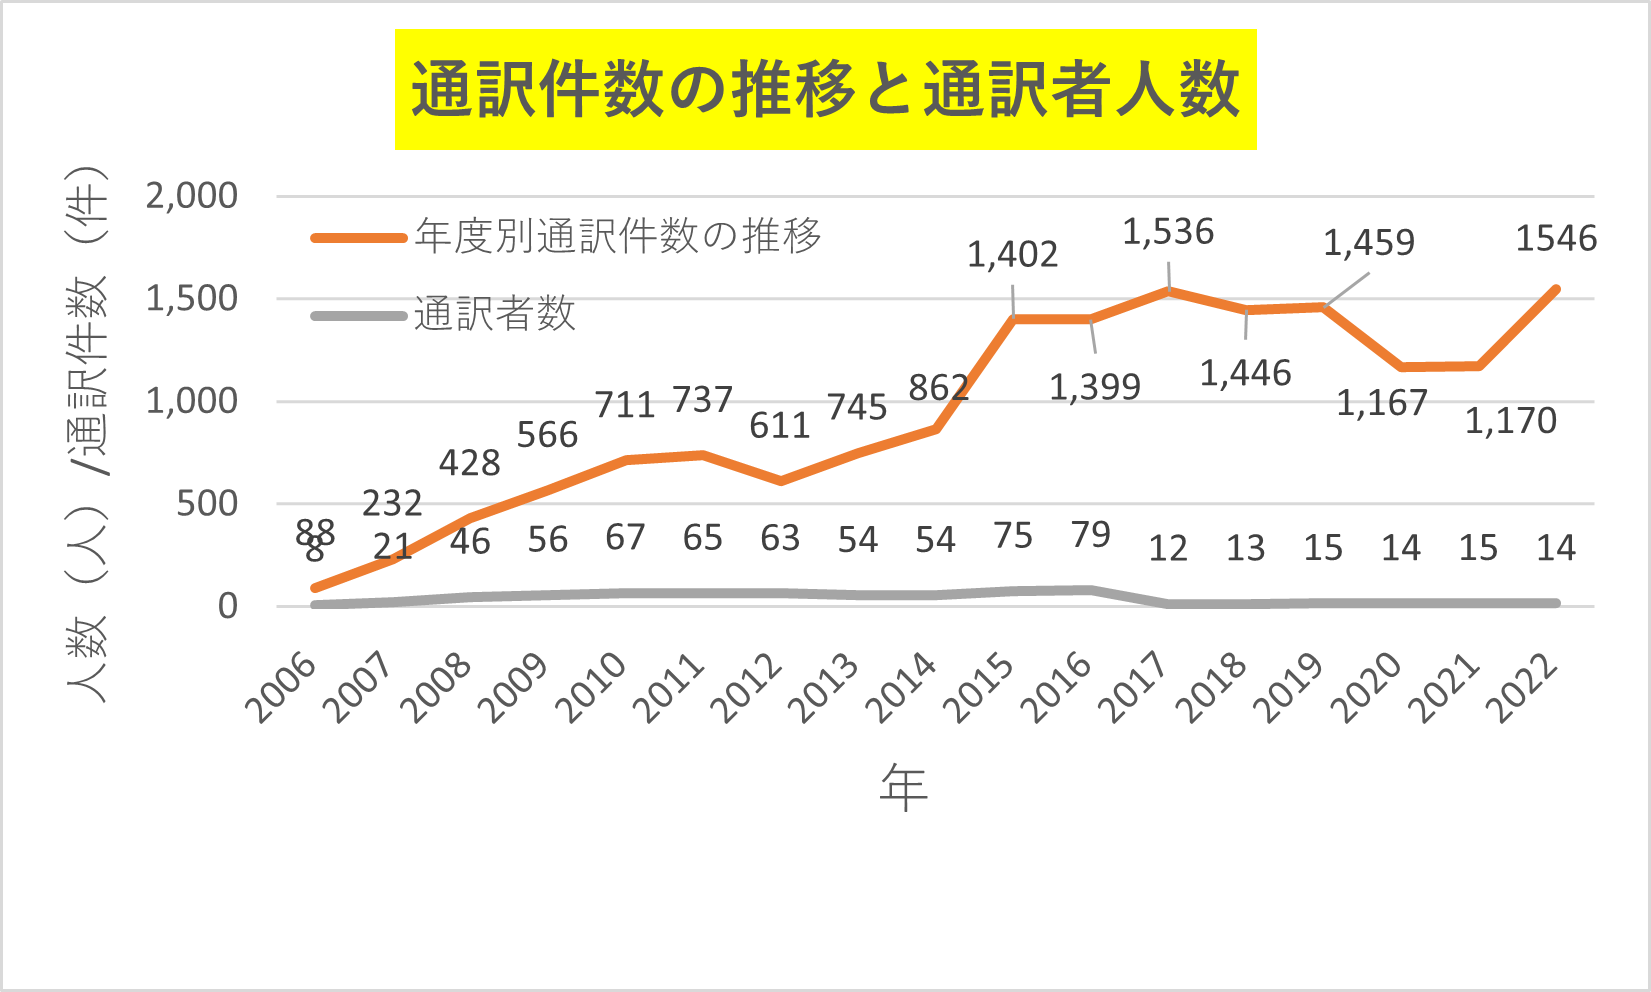 2006年以降の通訳件数と通訳者人数の推移